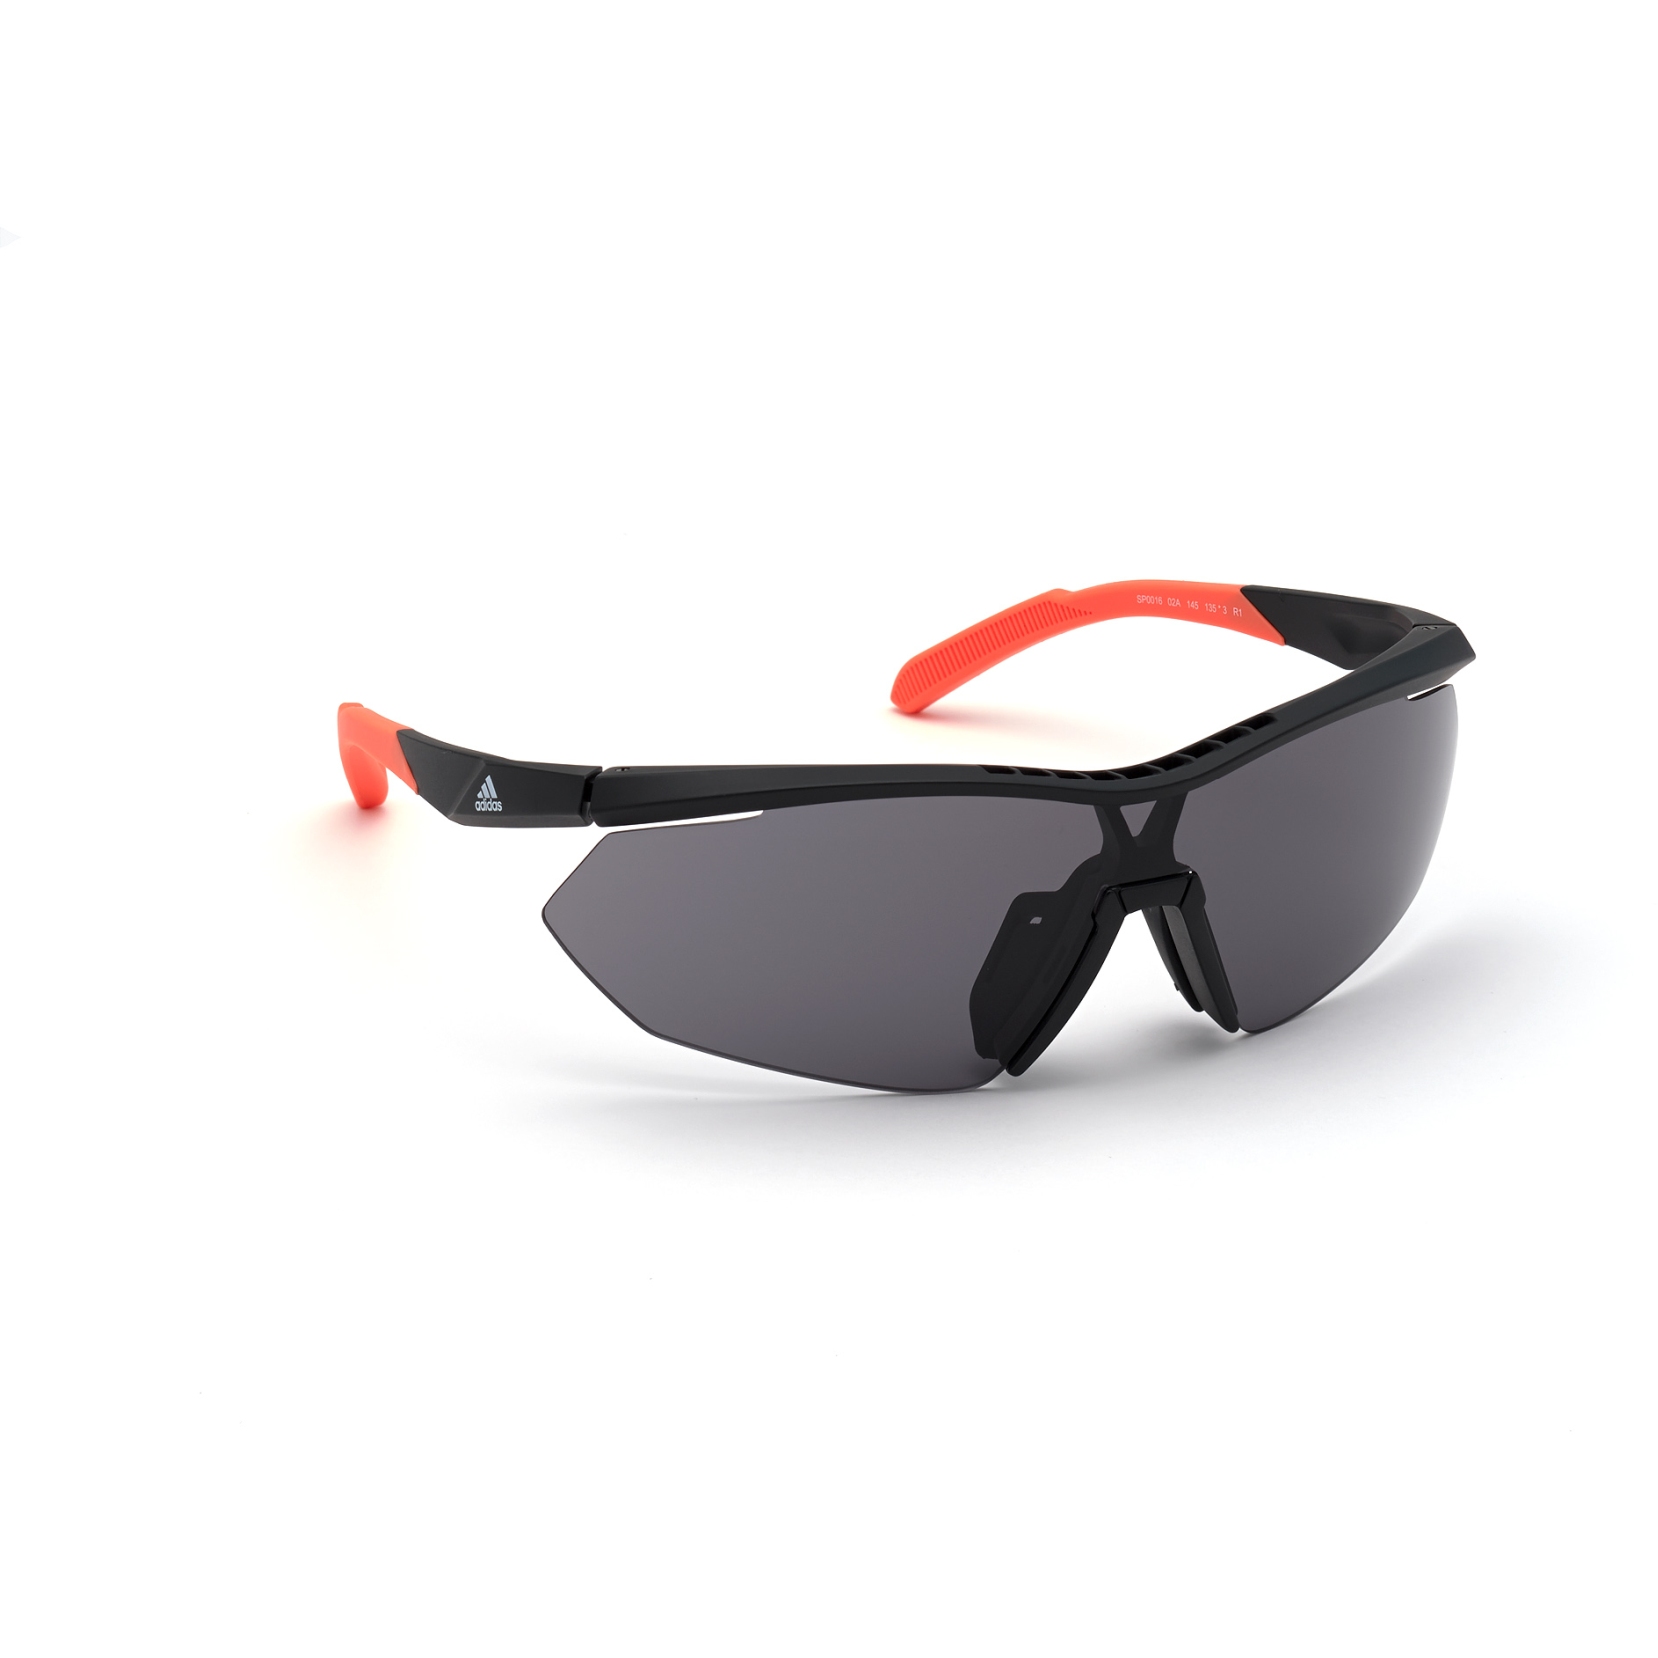 Produktbild von adidas Sp0016 Injected Sportsonnenbrille - Matte Black / Contrast Black + Orange